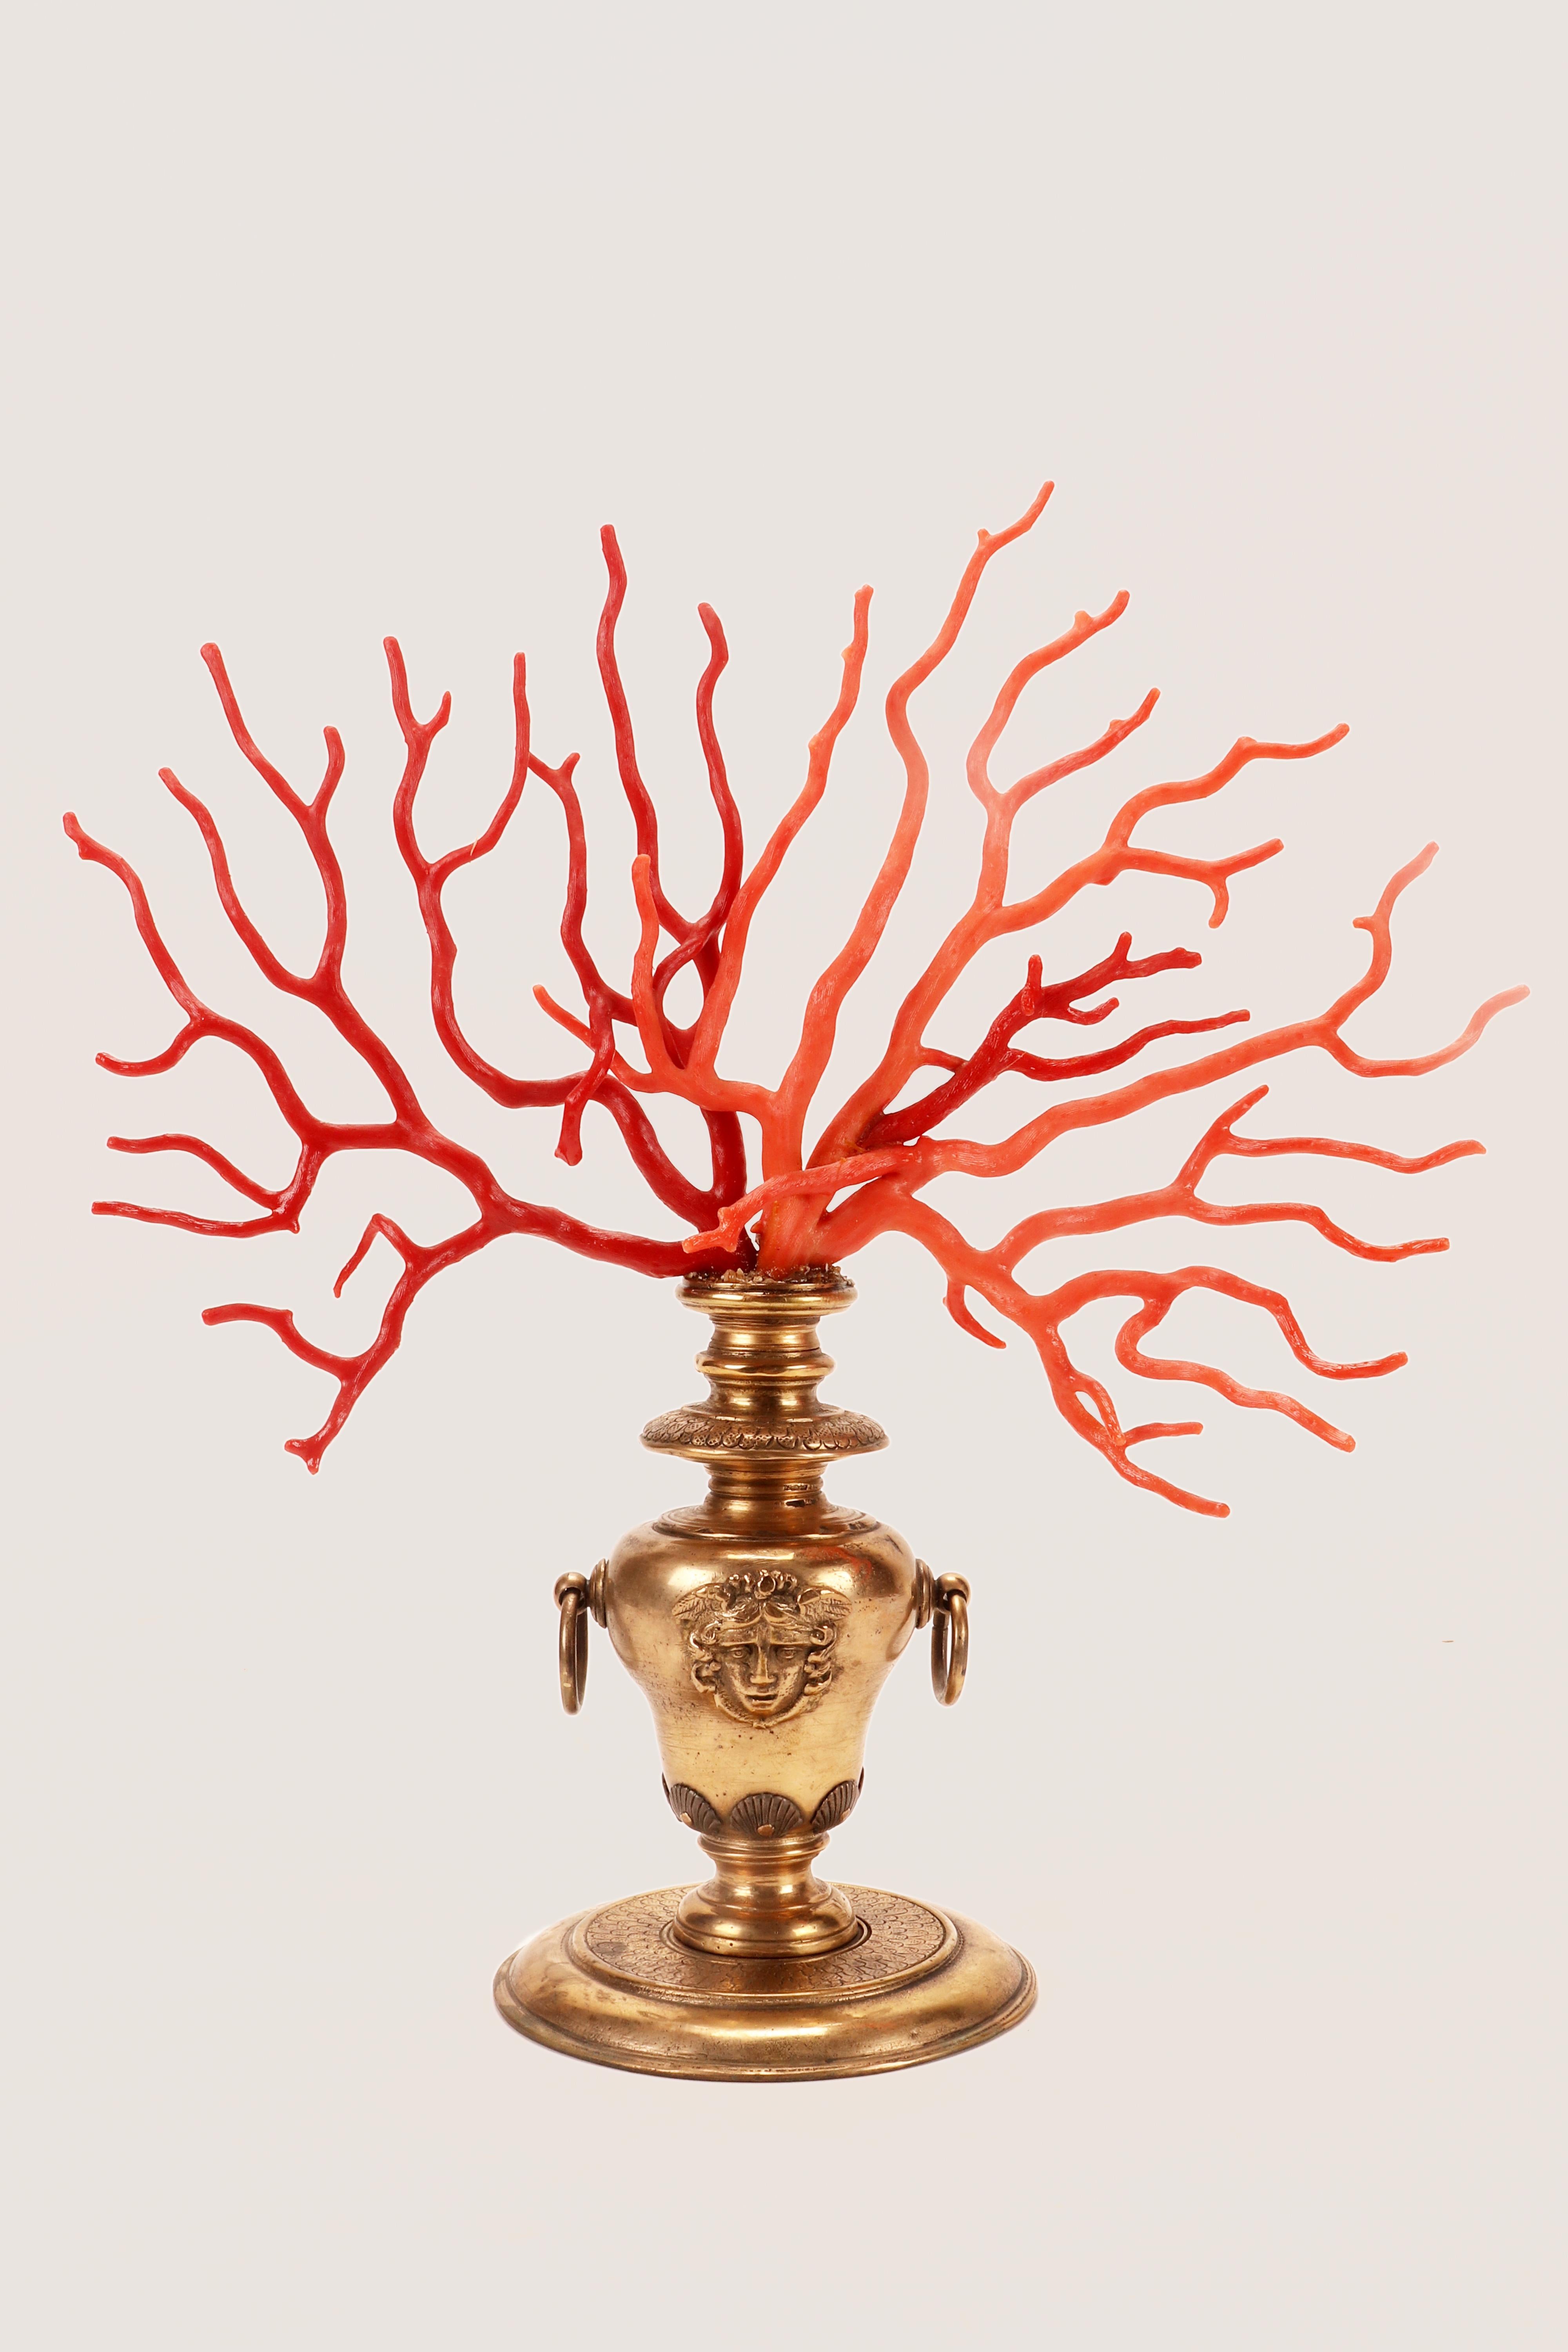 Ein großer Ast einer roten Mittelmeerkoralle (Corallium Rubrum) und ein großer Ast einer Sciacca-Koralle, zusammen auf einem vergoldeten Bronzesockel montiert. Für die Herstellung des vasenförmigen Sockels kommen verschiedene Techniken zum Einsatz: